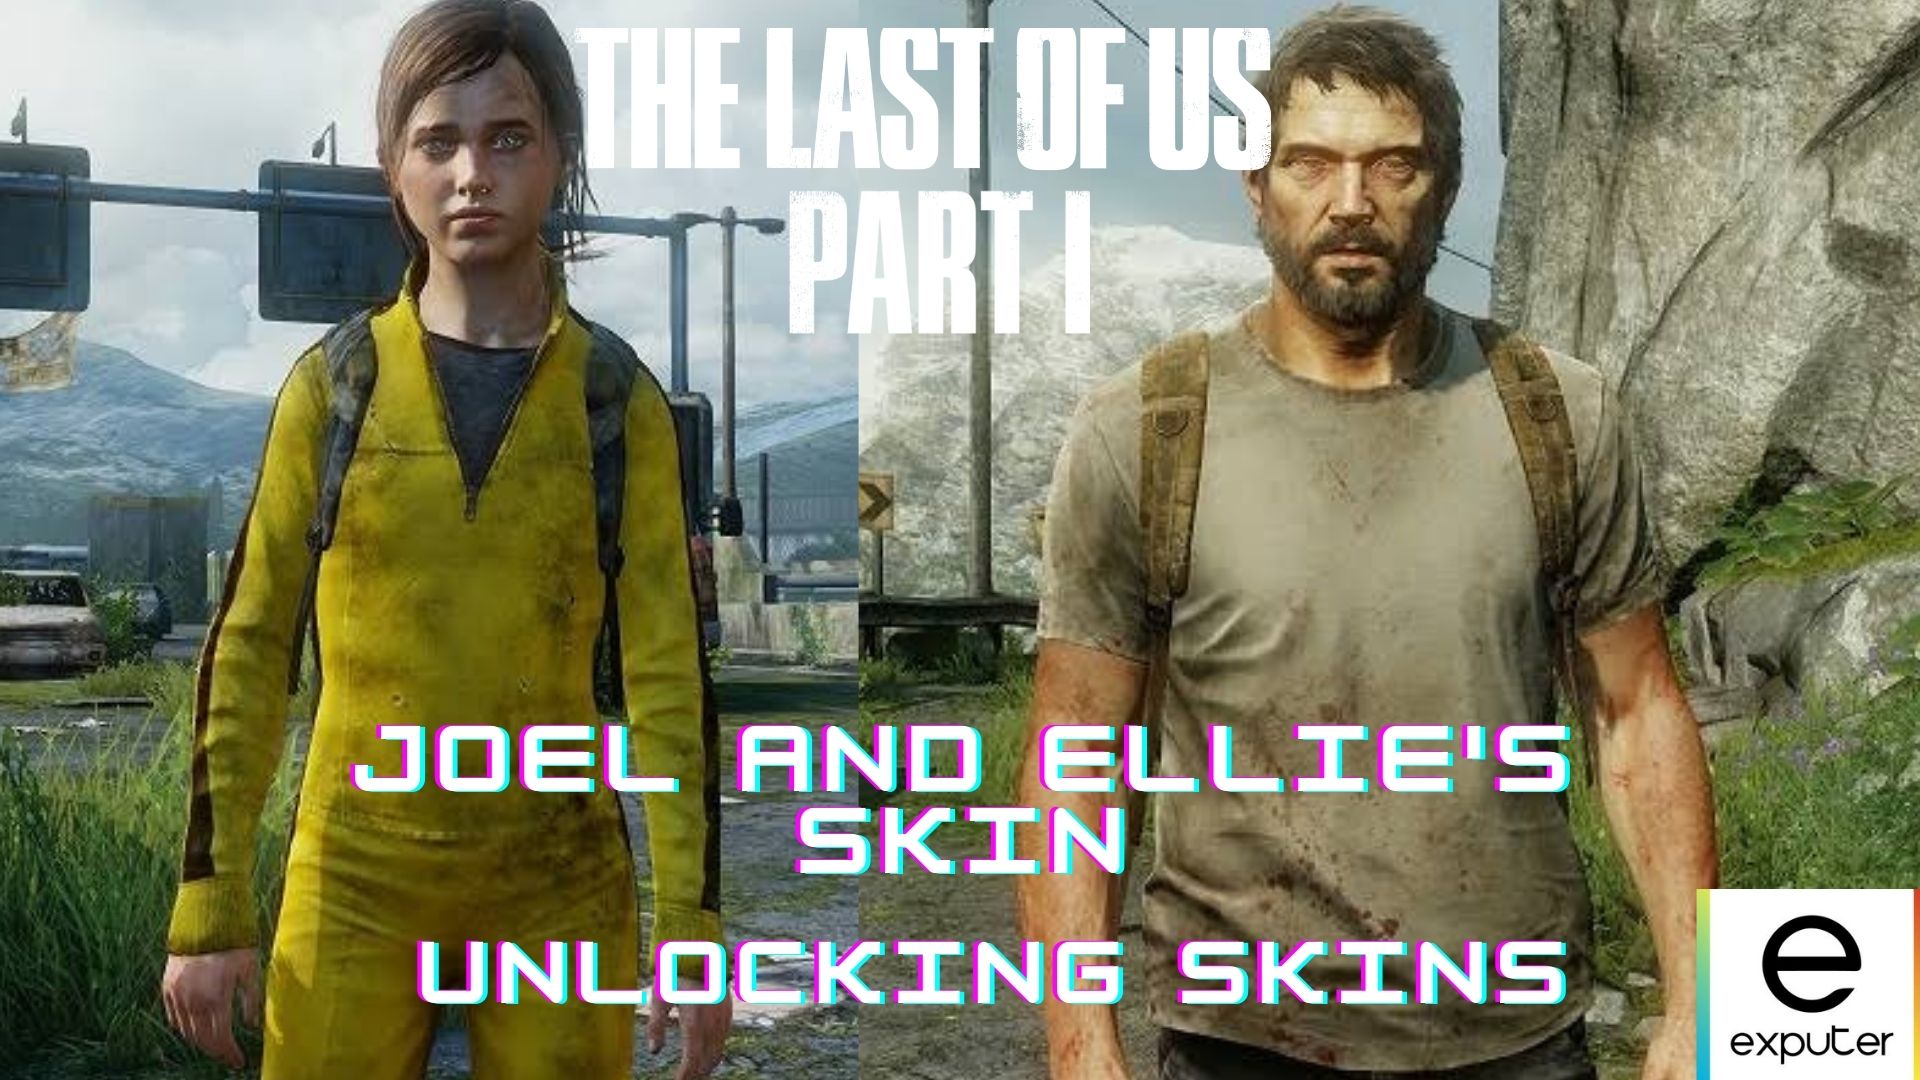 TLOU PS3] The Last Of Us Mod Menu